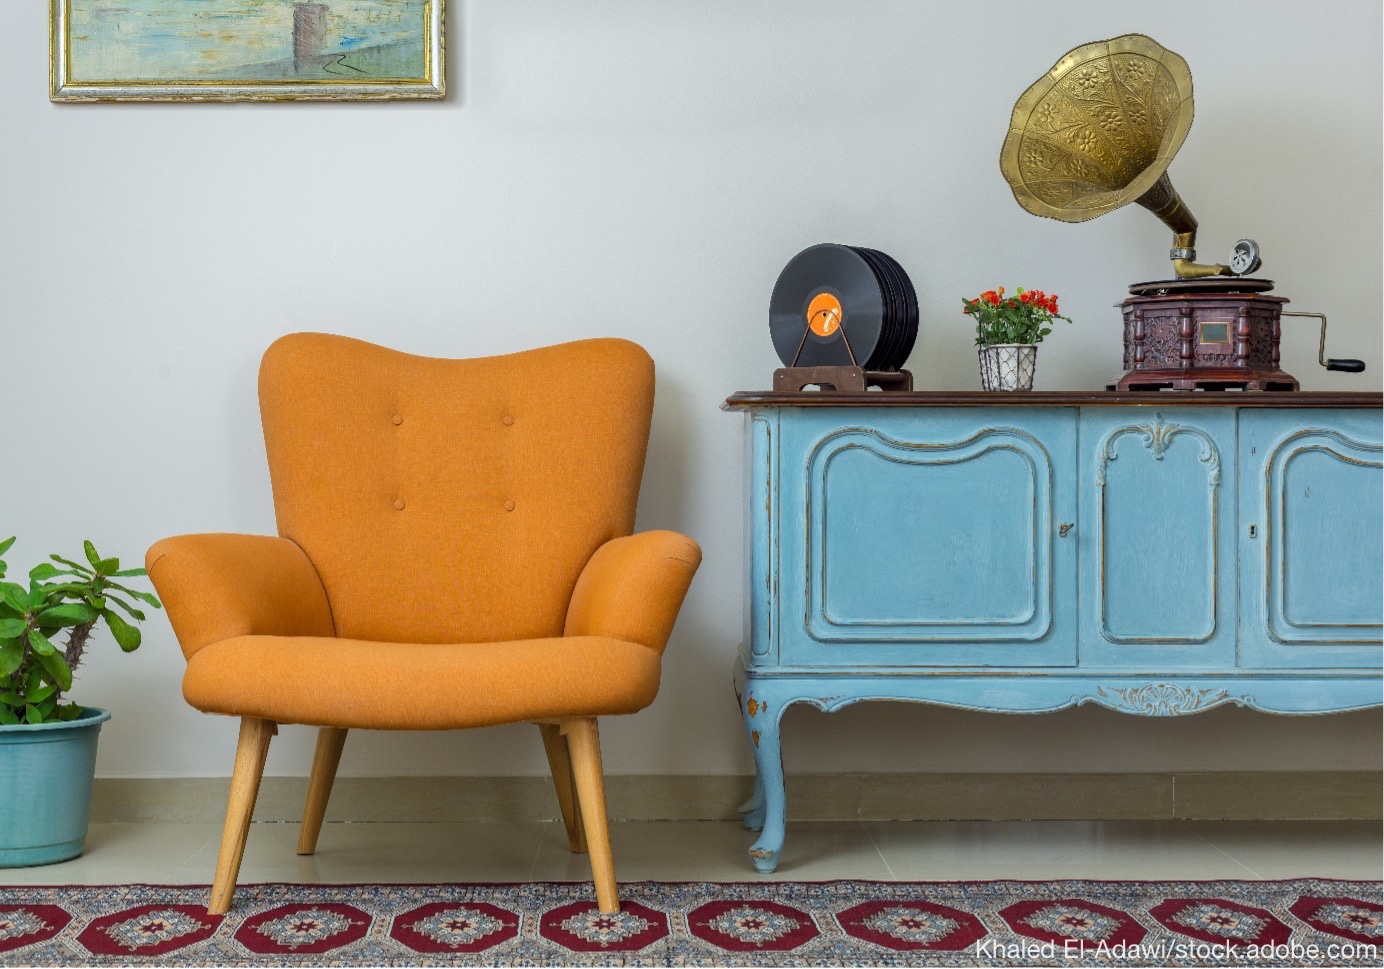 Vintage-Interieur mit Bilderrahmen, Schallplatten und einem orangefarbenen Sessel